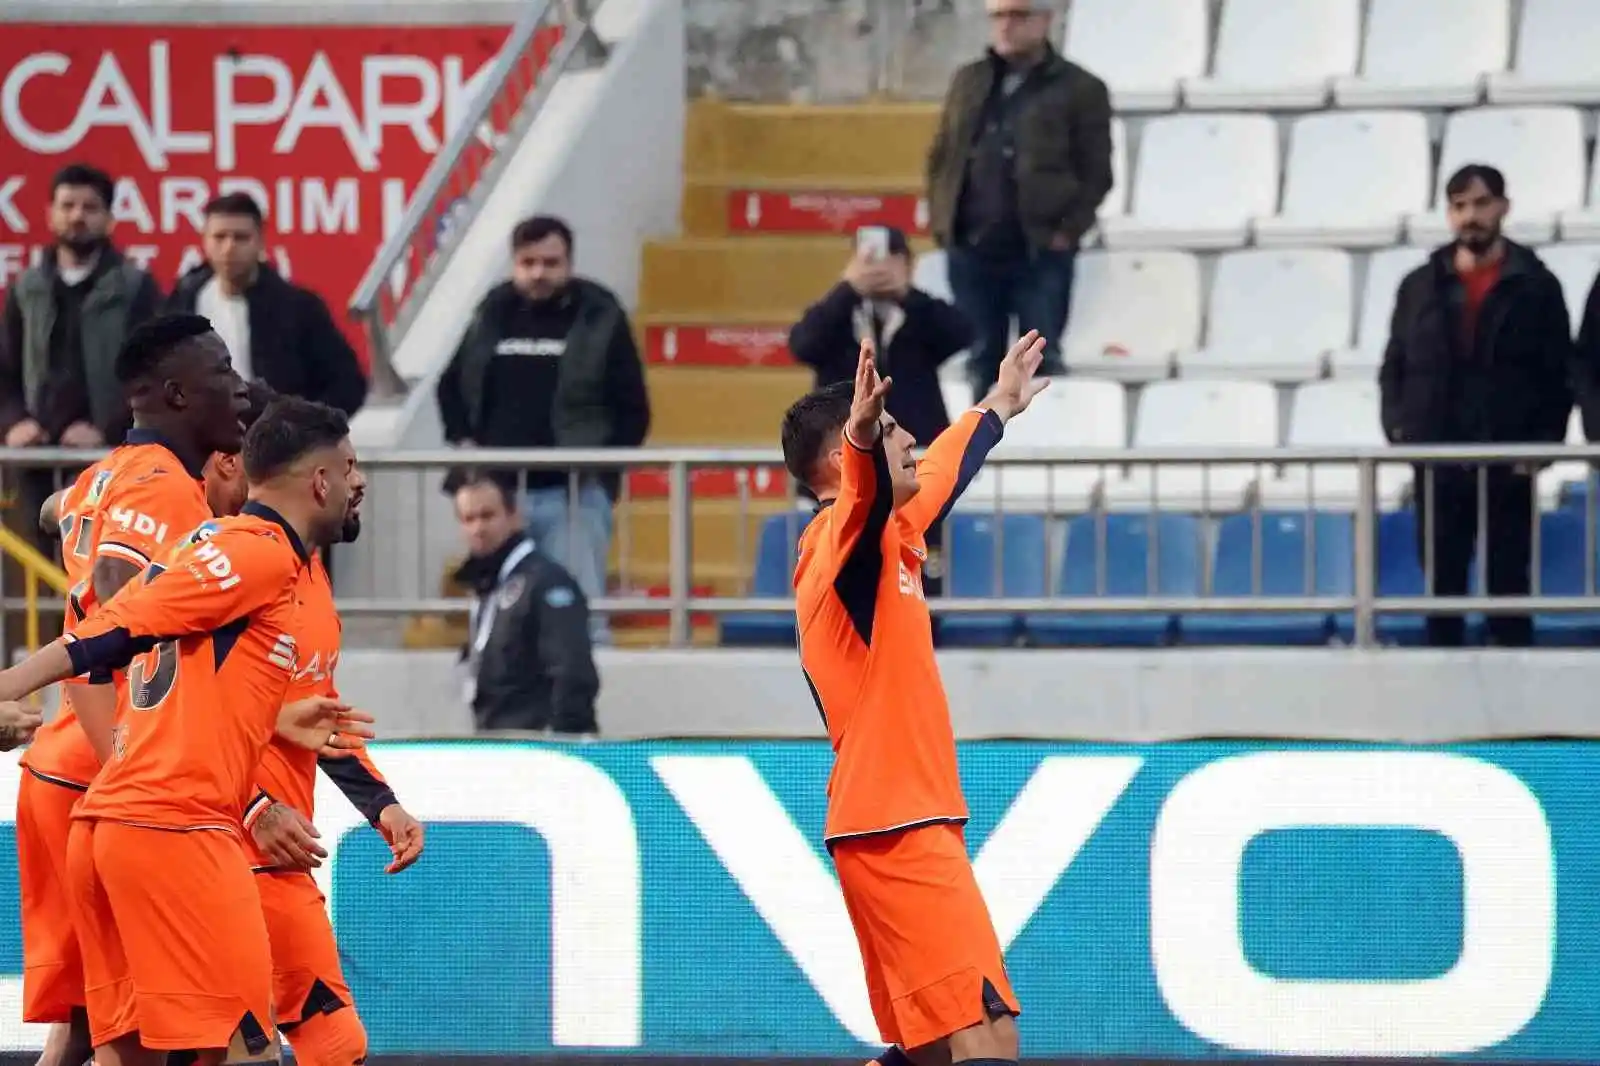 Spor Toto Süper Lig: Kasımpaşa: 1 - Medipol Başakşehir: 3 (Maç sonucu)
